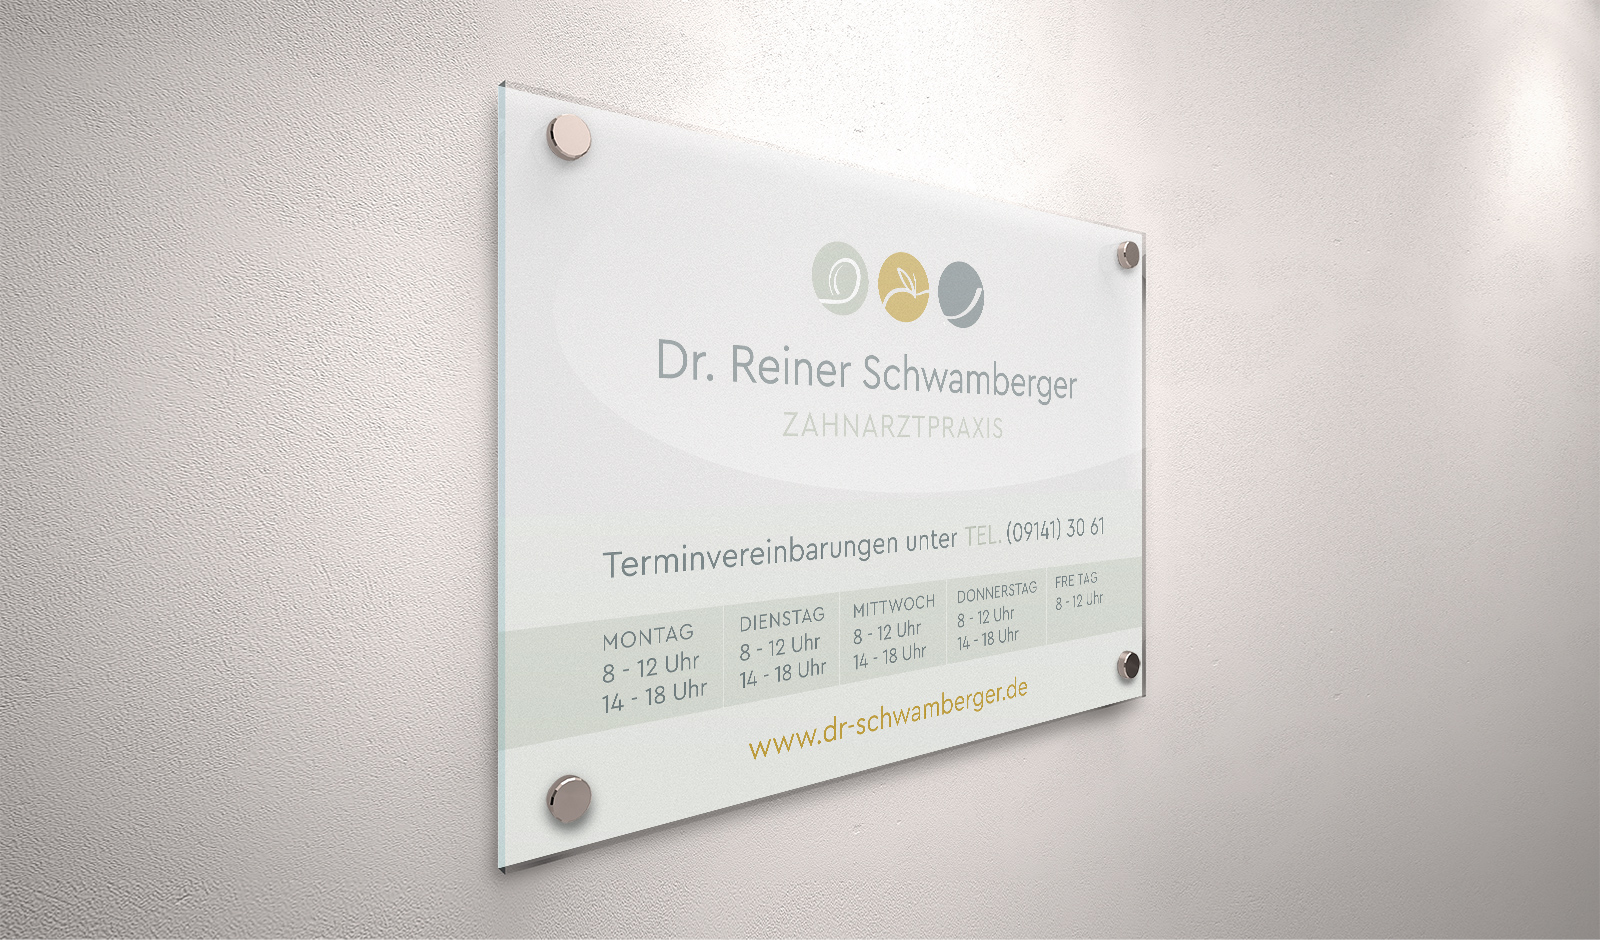 Zahnarzt Dr. Schwamberger Reiner in Weißenburg, Beschilderung